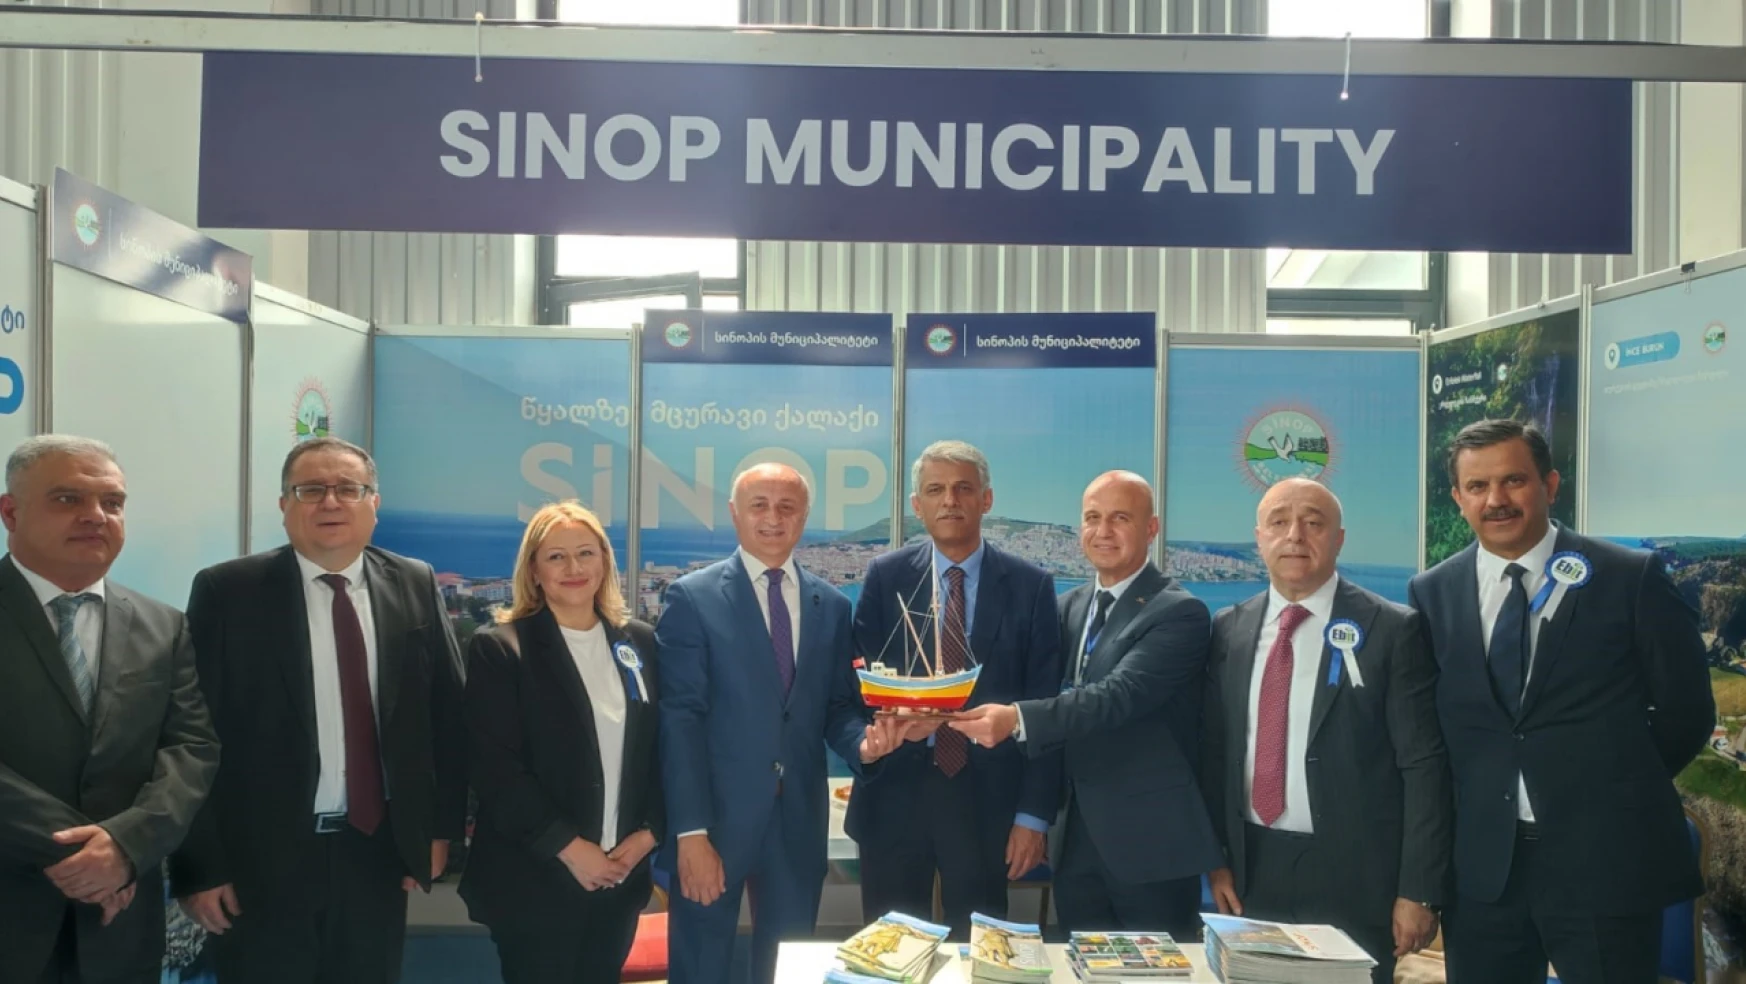 Sinop Belediyesi Batum'da stant açtı